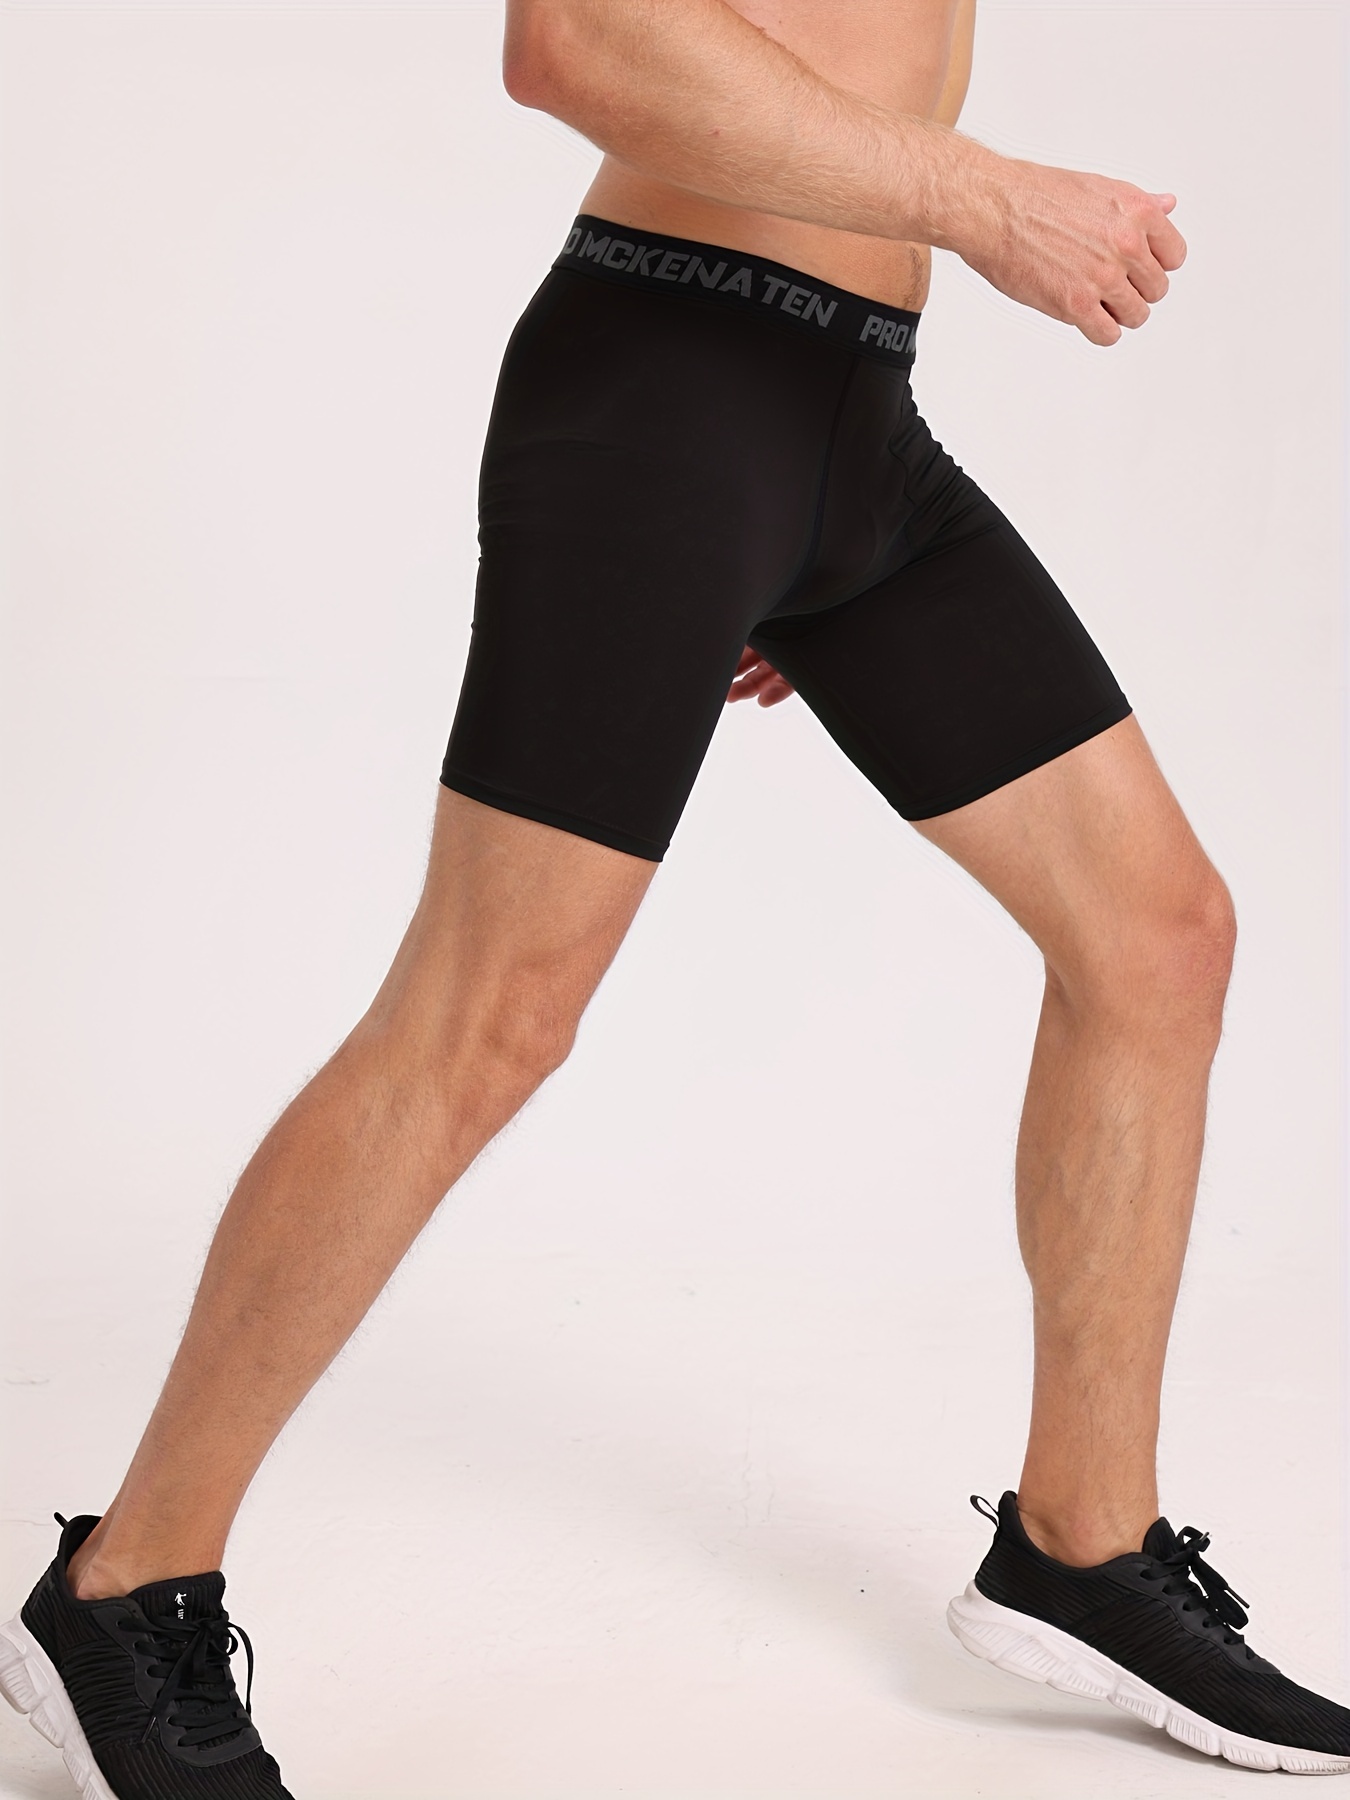 Men's Compression Shorts, Tights & Tops.